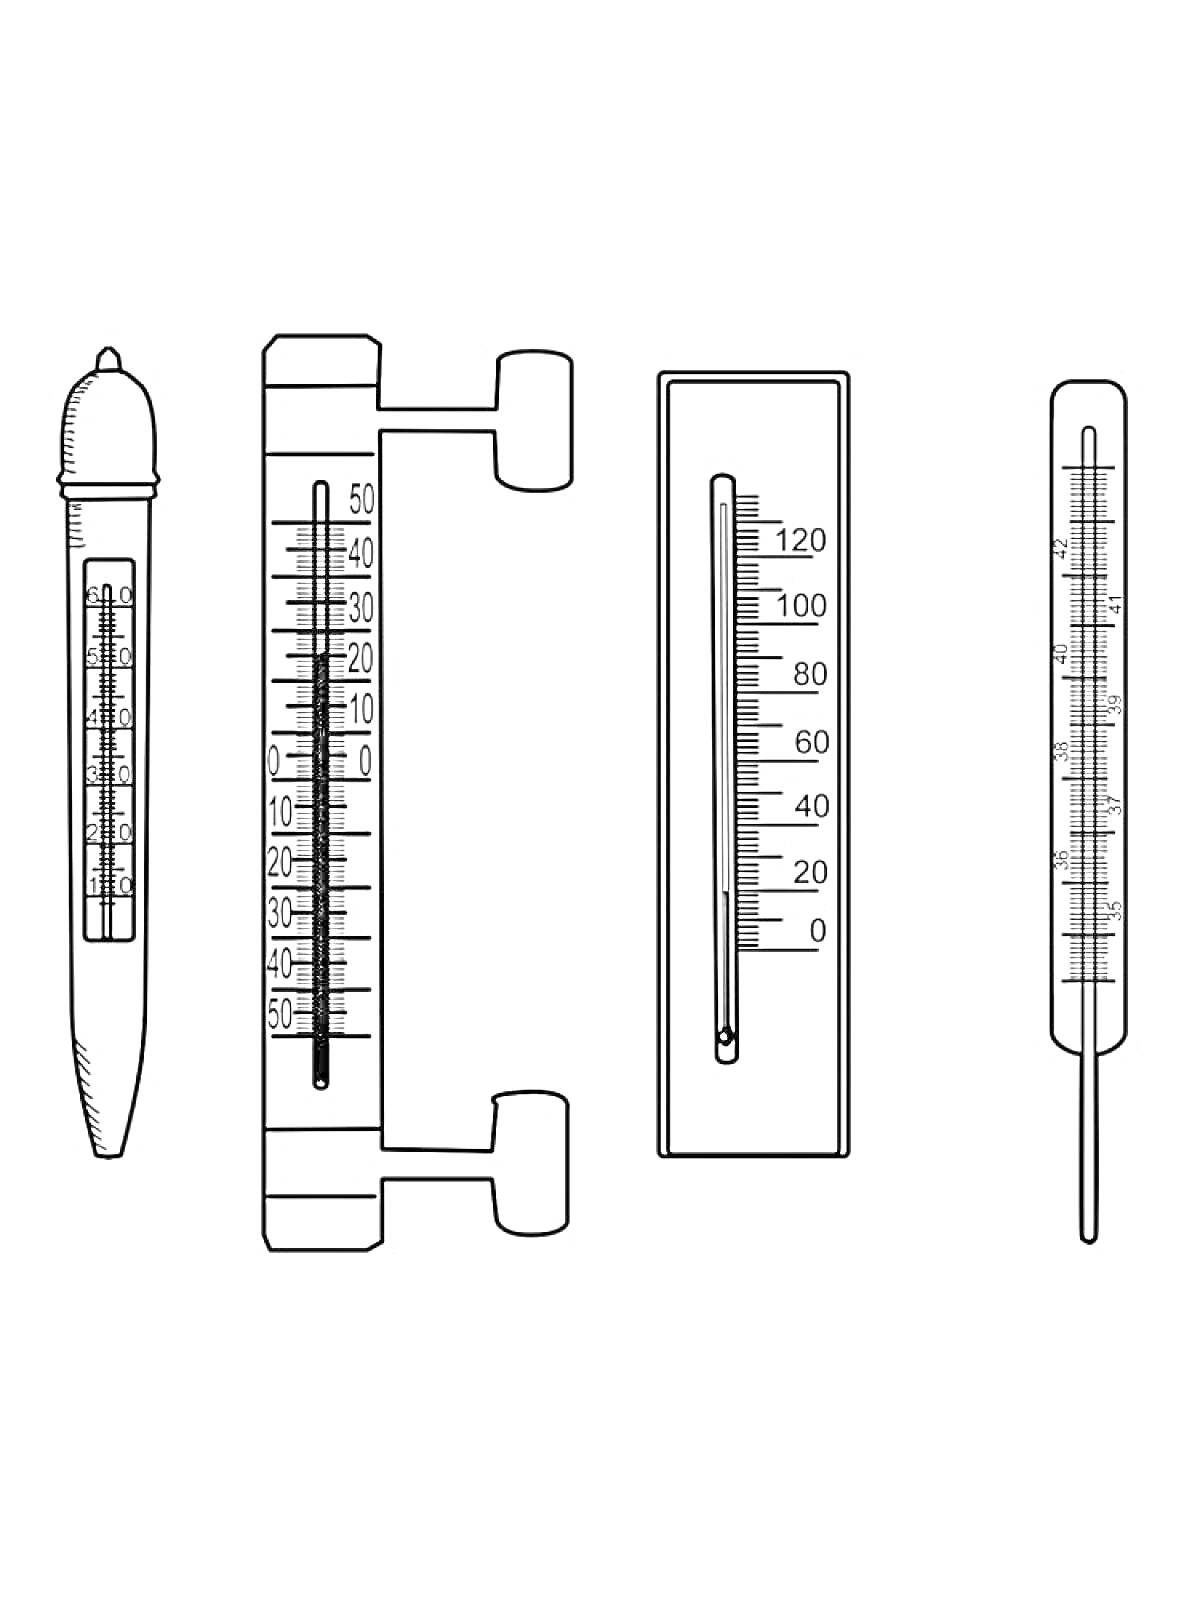 Четыре градусника различных типов: медицинский ртутный, оконный, барометрический и классический стеклянный